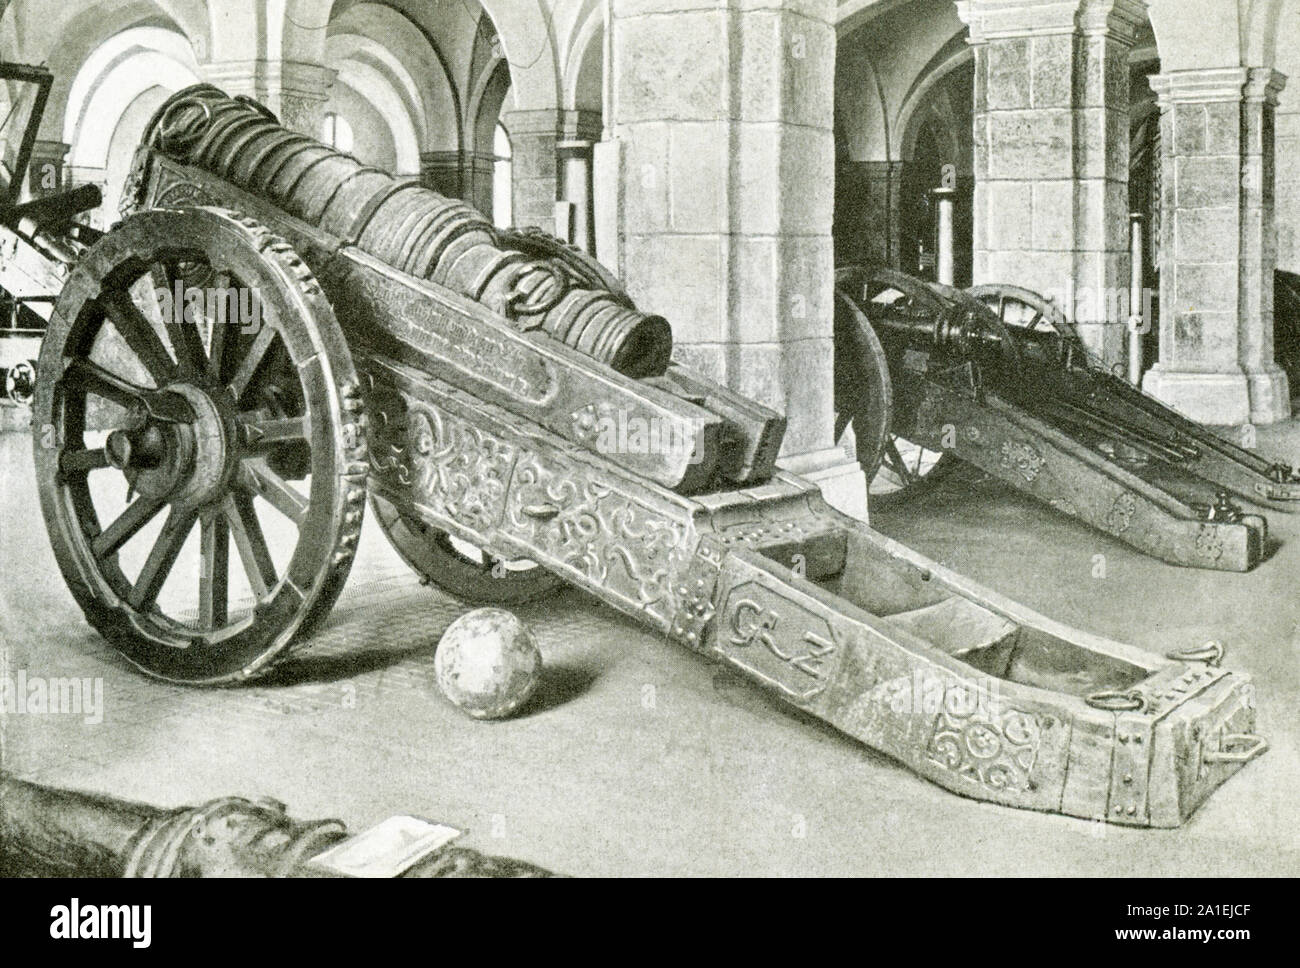 Montré ici sont cannon sur roues qui date de la fin des années 1300. Banque D'Images